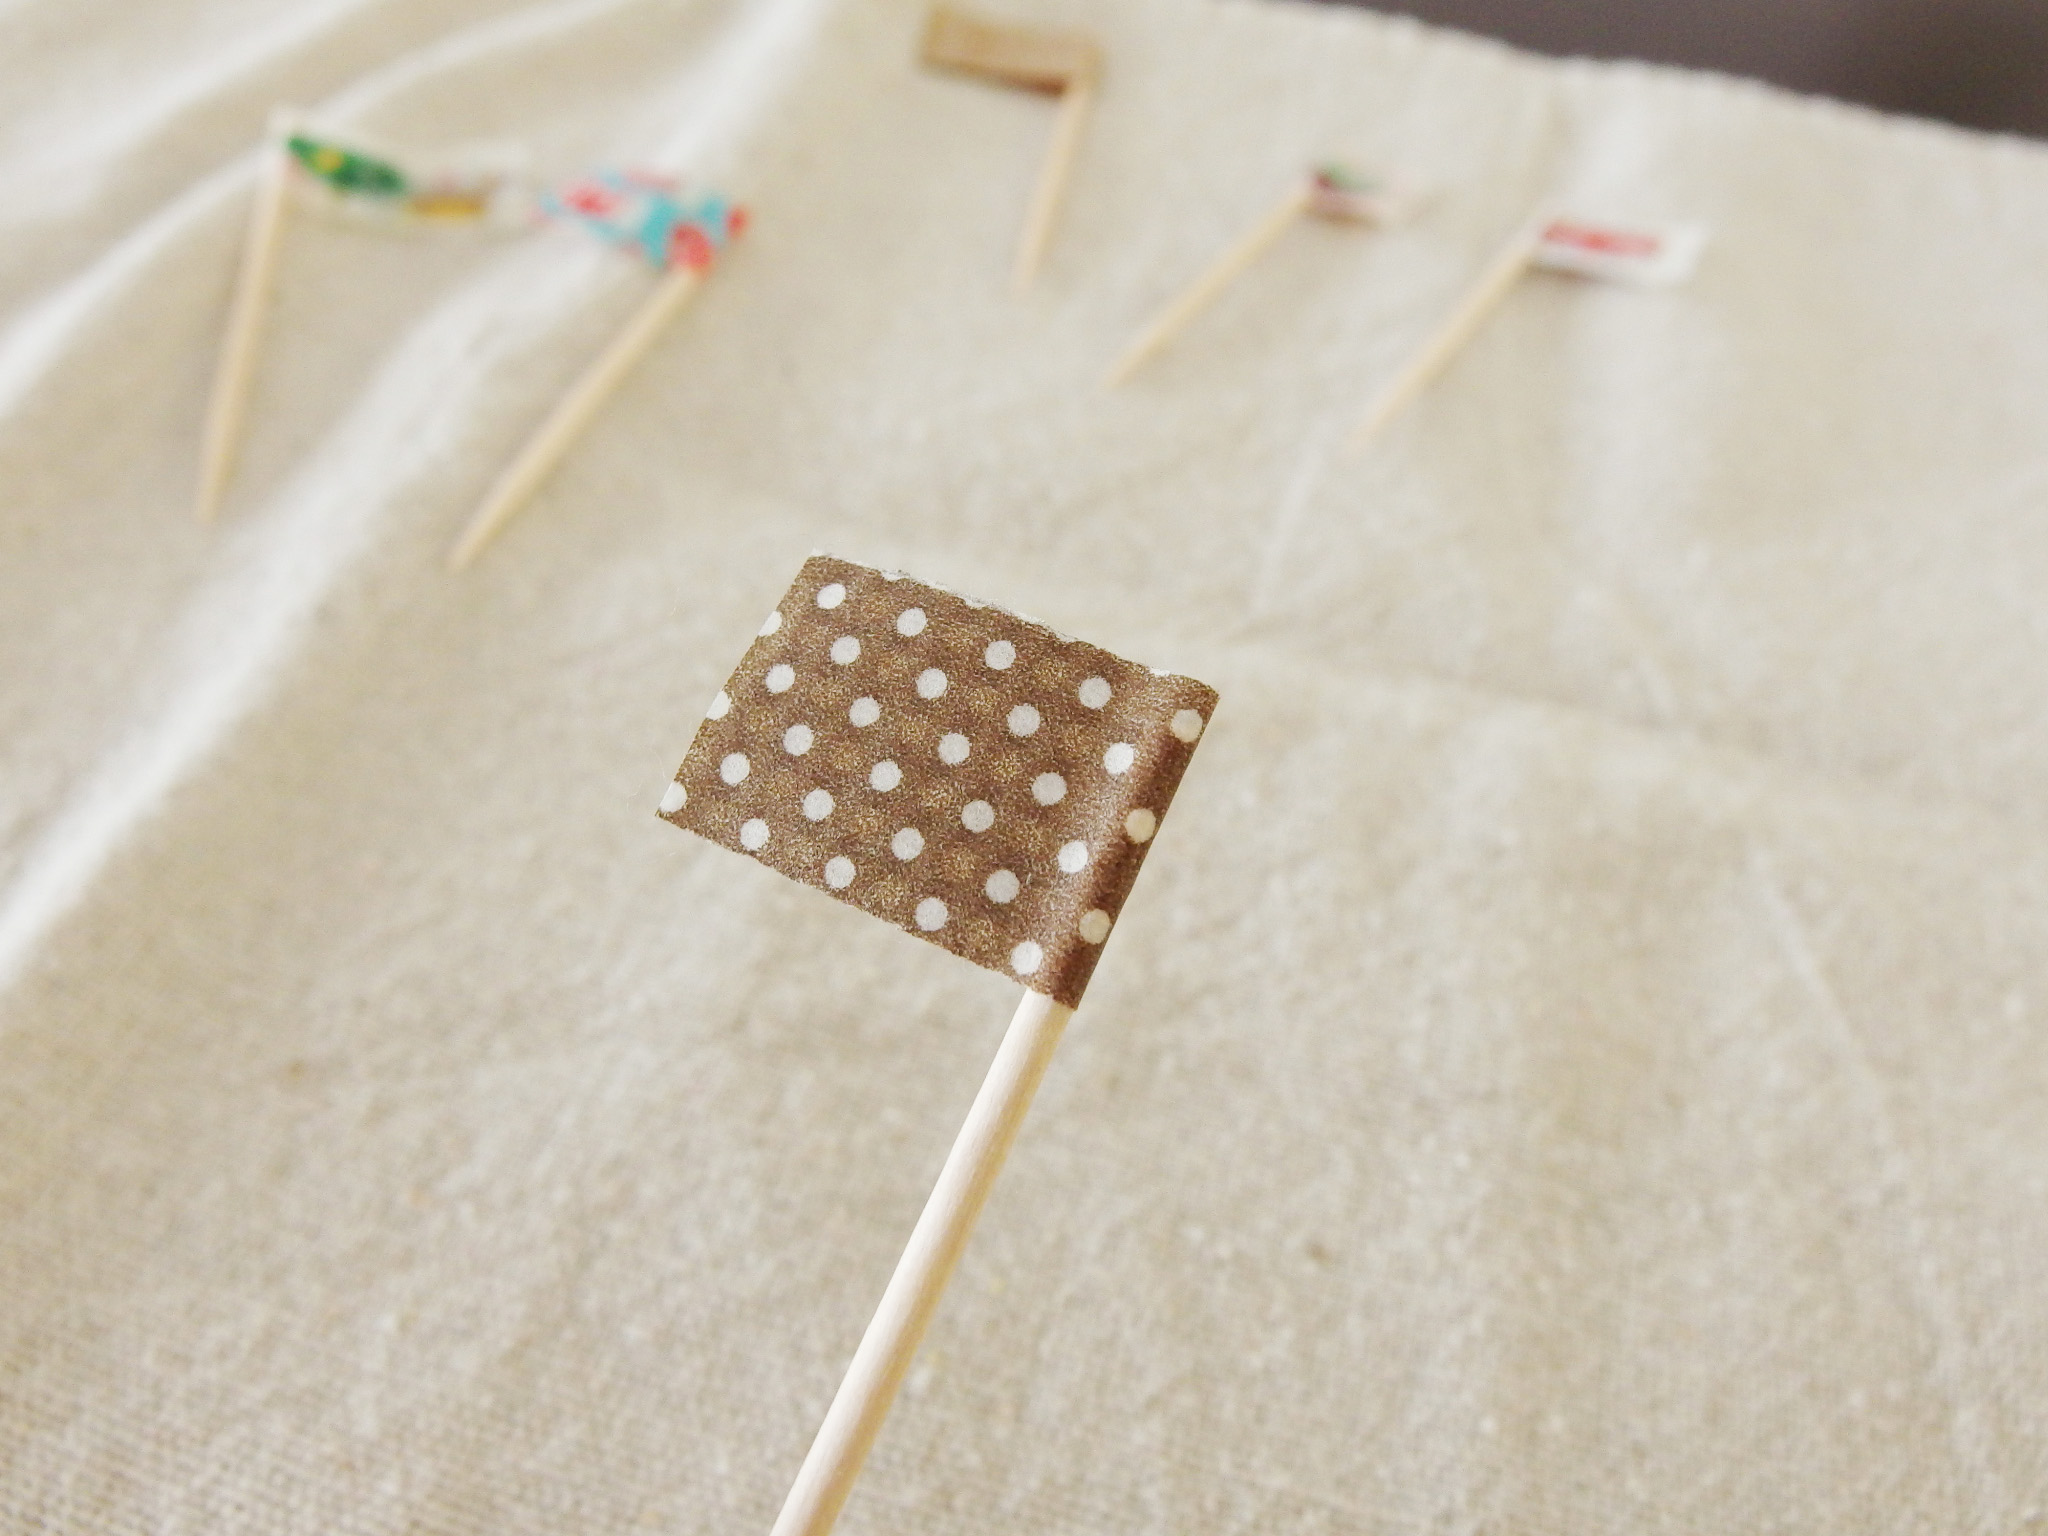 マスキングテープで可愛いピック】お子様ランチの旗を簡単手作り | エンジョイ子育て生活